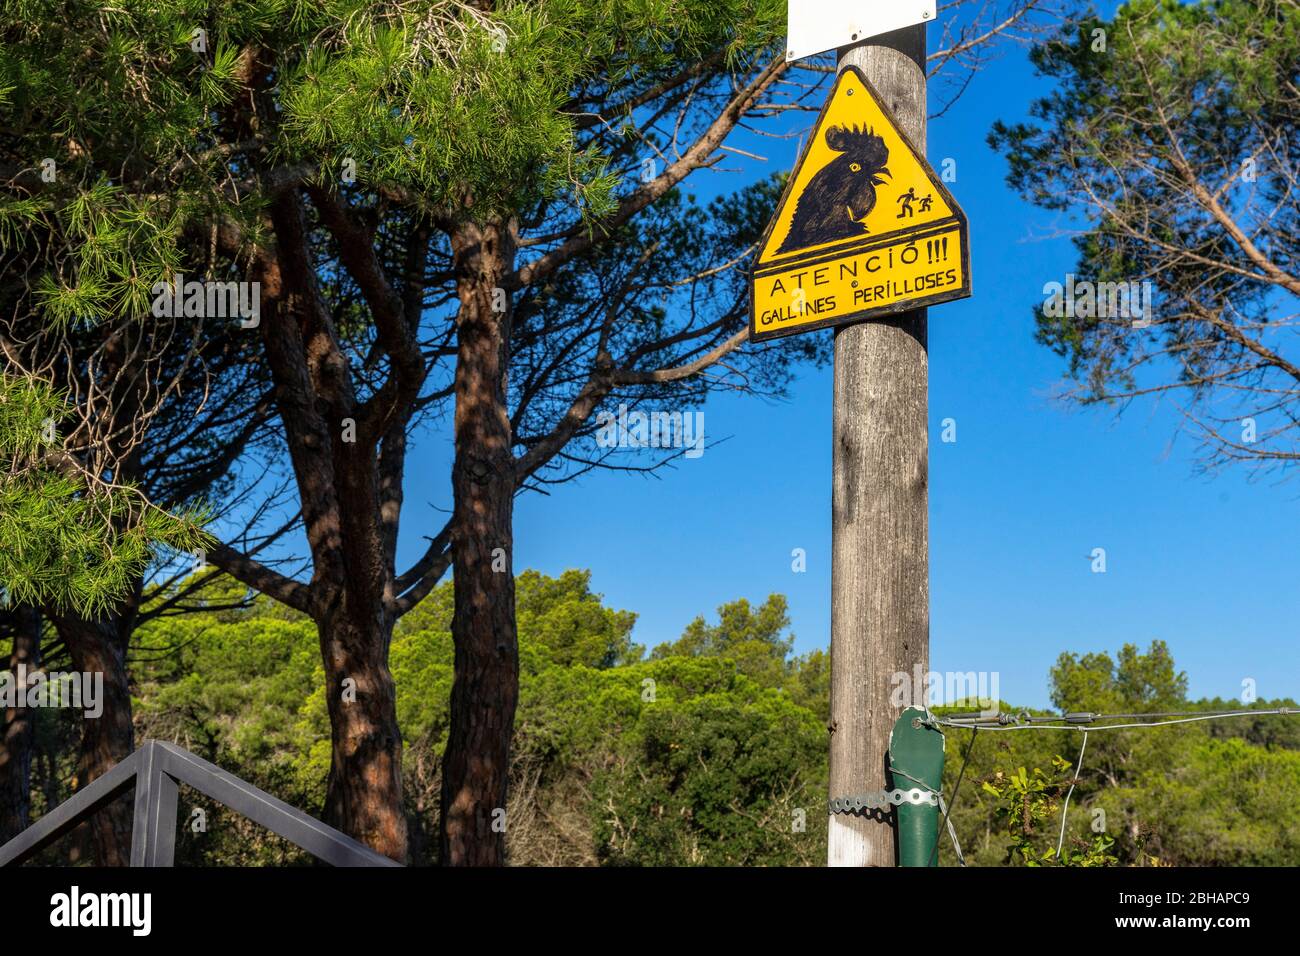 Europe, Espagne, Catalogne, Costa Brava, panneau d'avertissement plein d'humour entre Tossa de Mar et Lloret de Mar. Banque D'Images